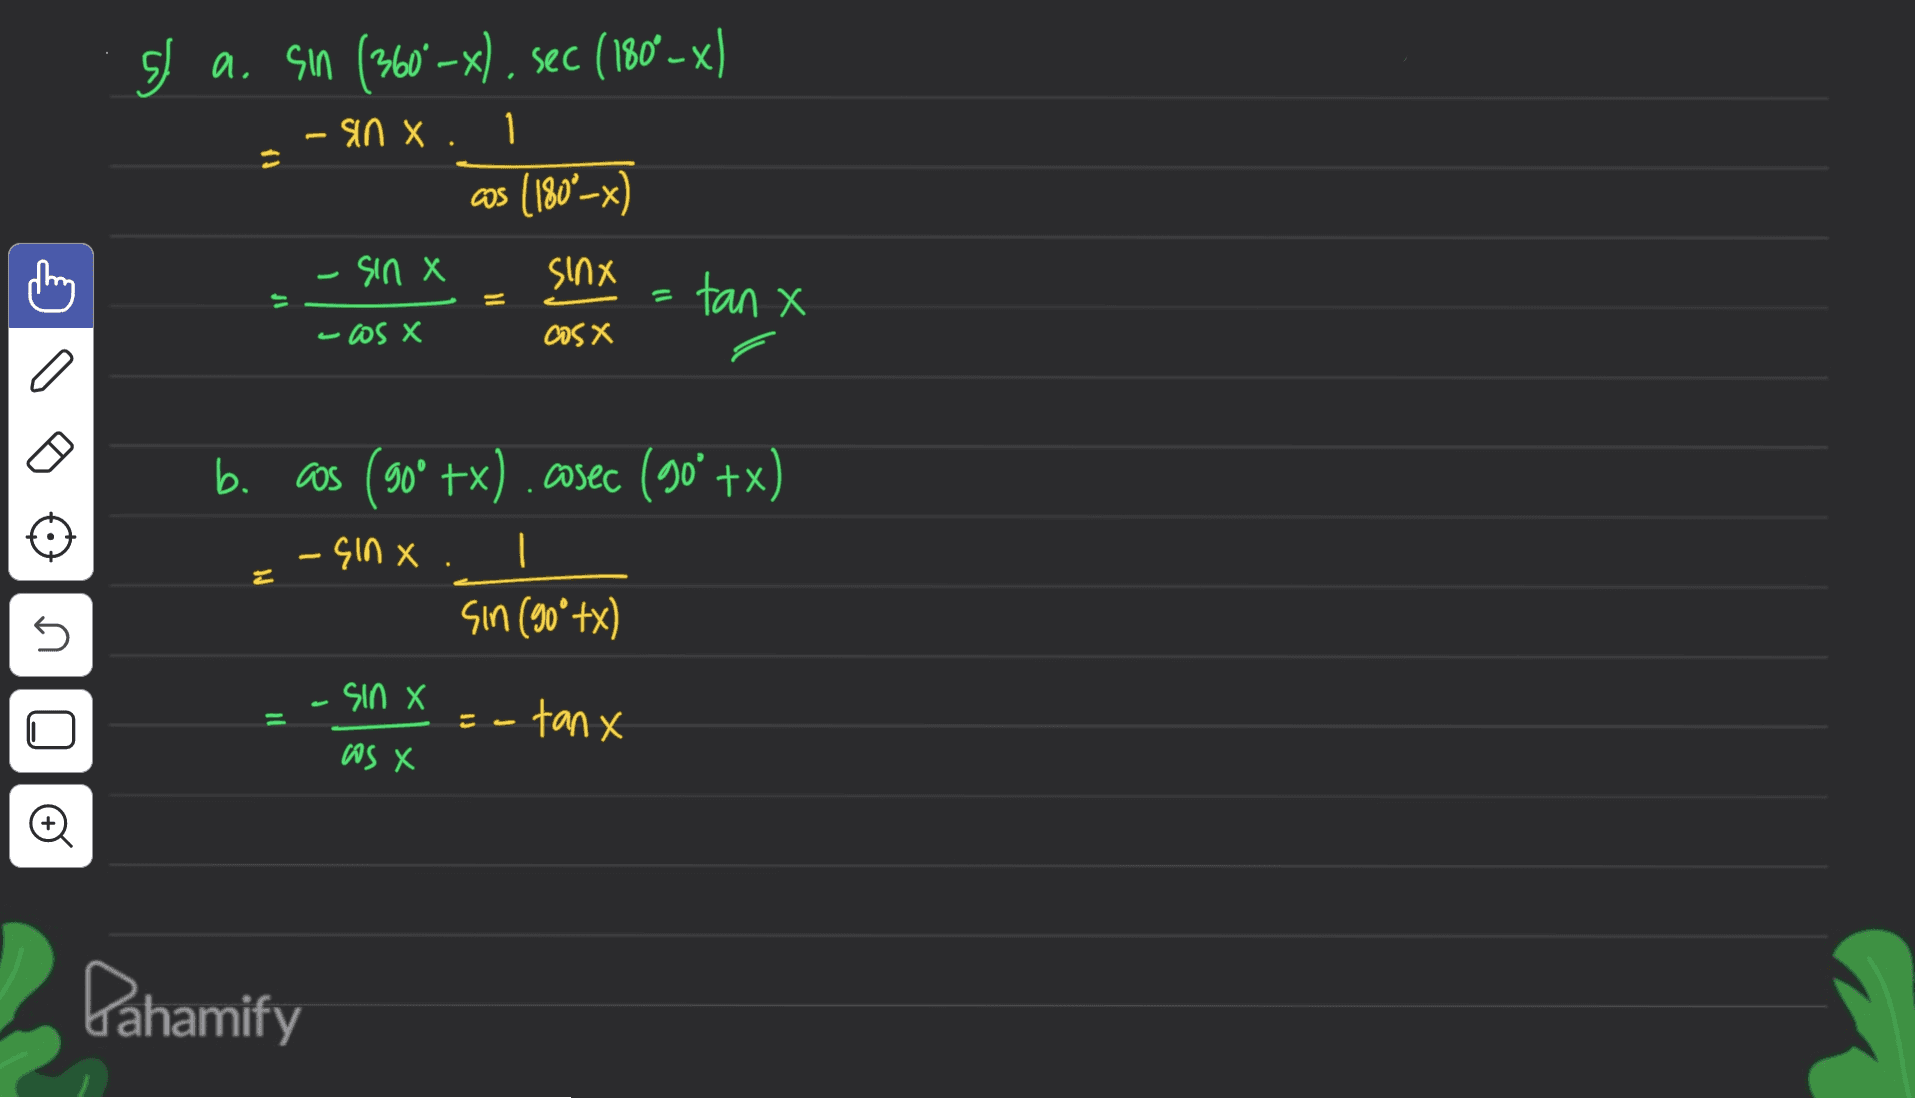 SI a. Sin (360° –x), sec (180º – x) - sin X. 1 cos (1802-x) -sin X sinx = tan X If -os X cos x b. as (90° +x) .cosec (90° +x) - <10 х | sin (90° +x) 5 -sin X X سه ت - tanx as X Q0 Pahamify 